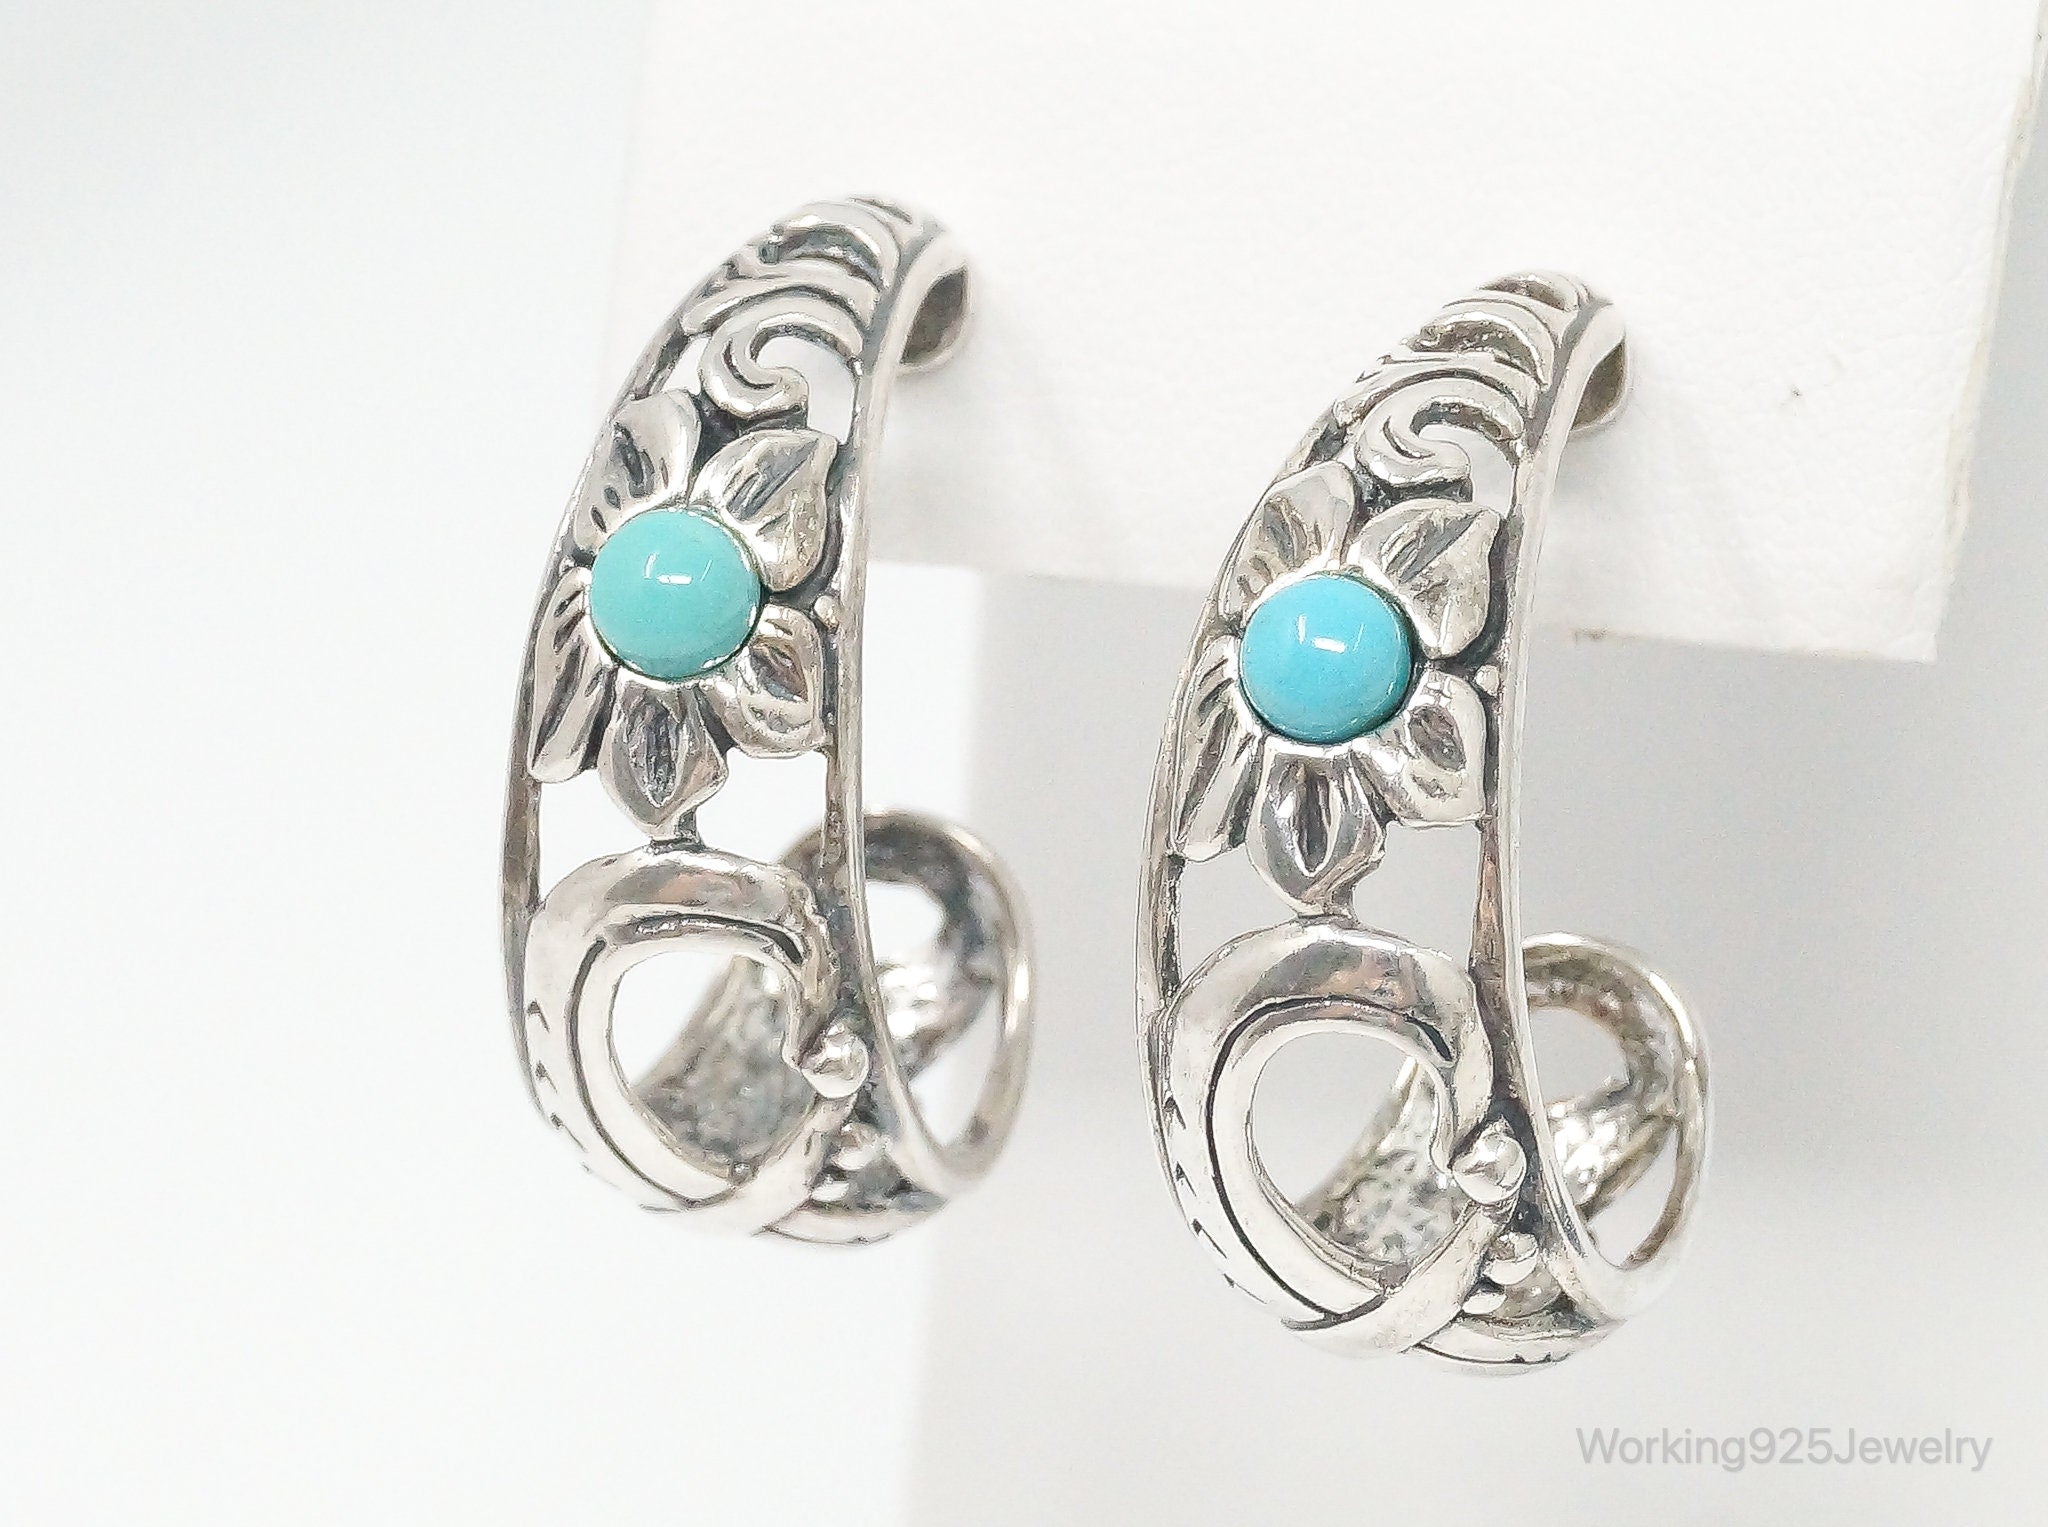 Western Designer Carolyn Pollack Relios Turquoise Sterling Silver Hoop Earrings